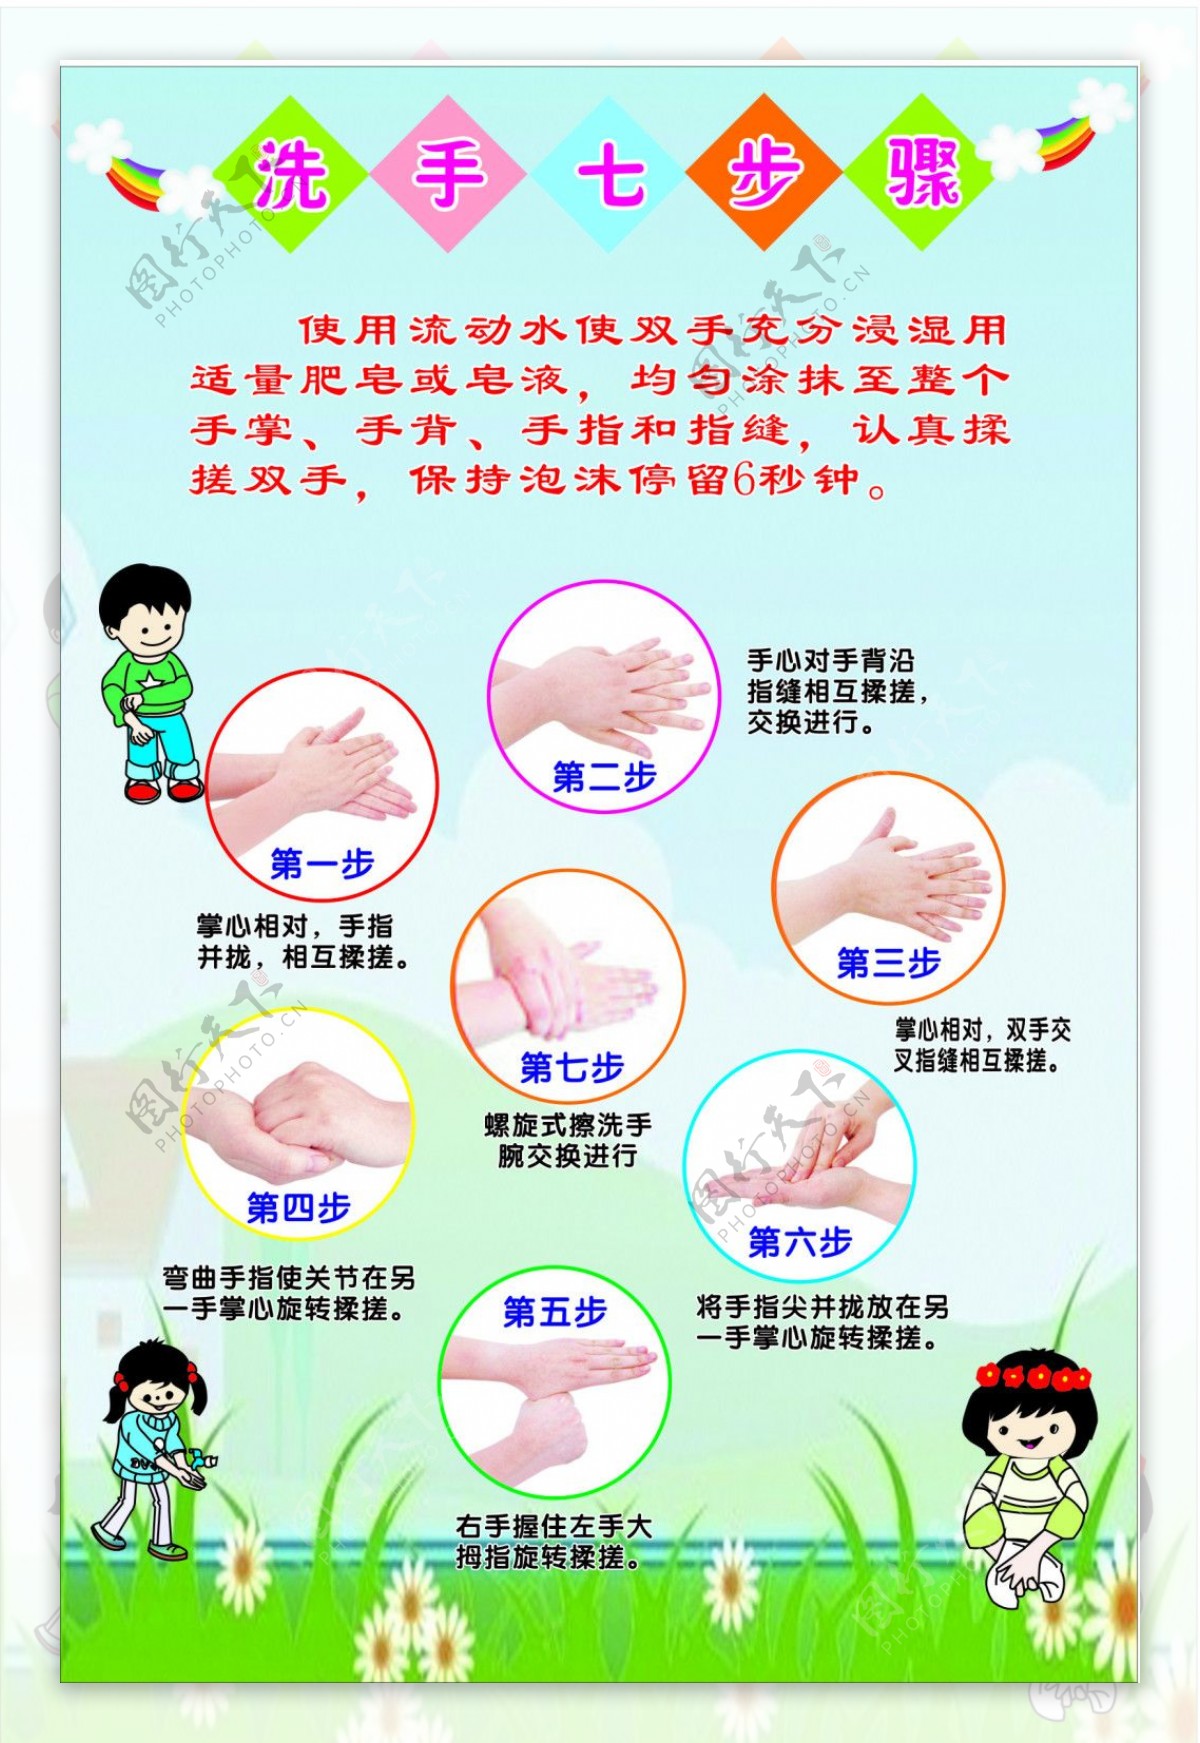 幼儿园洗手七步法